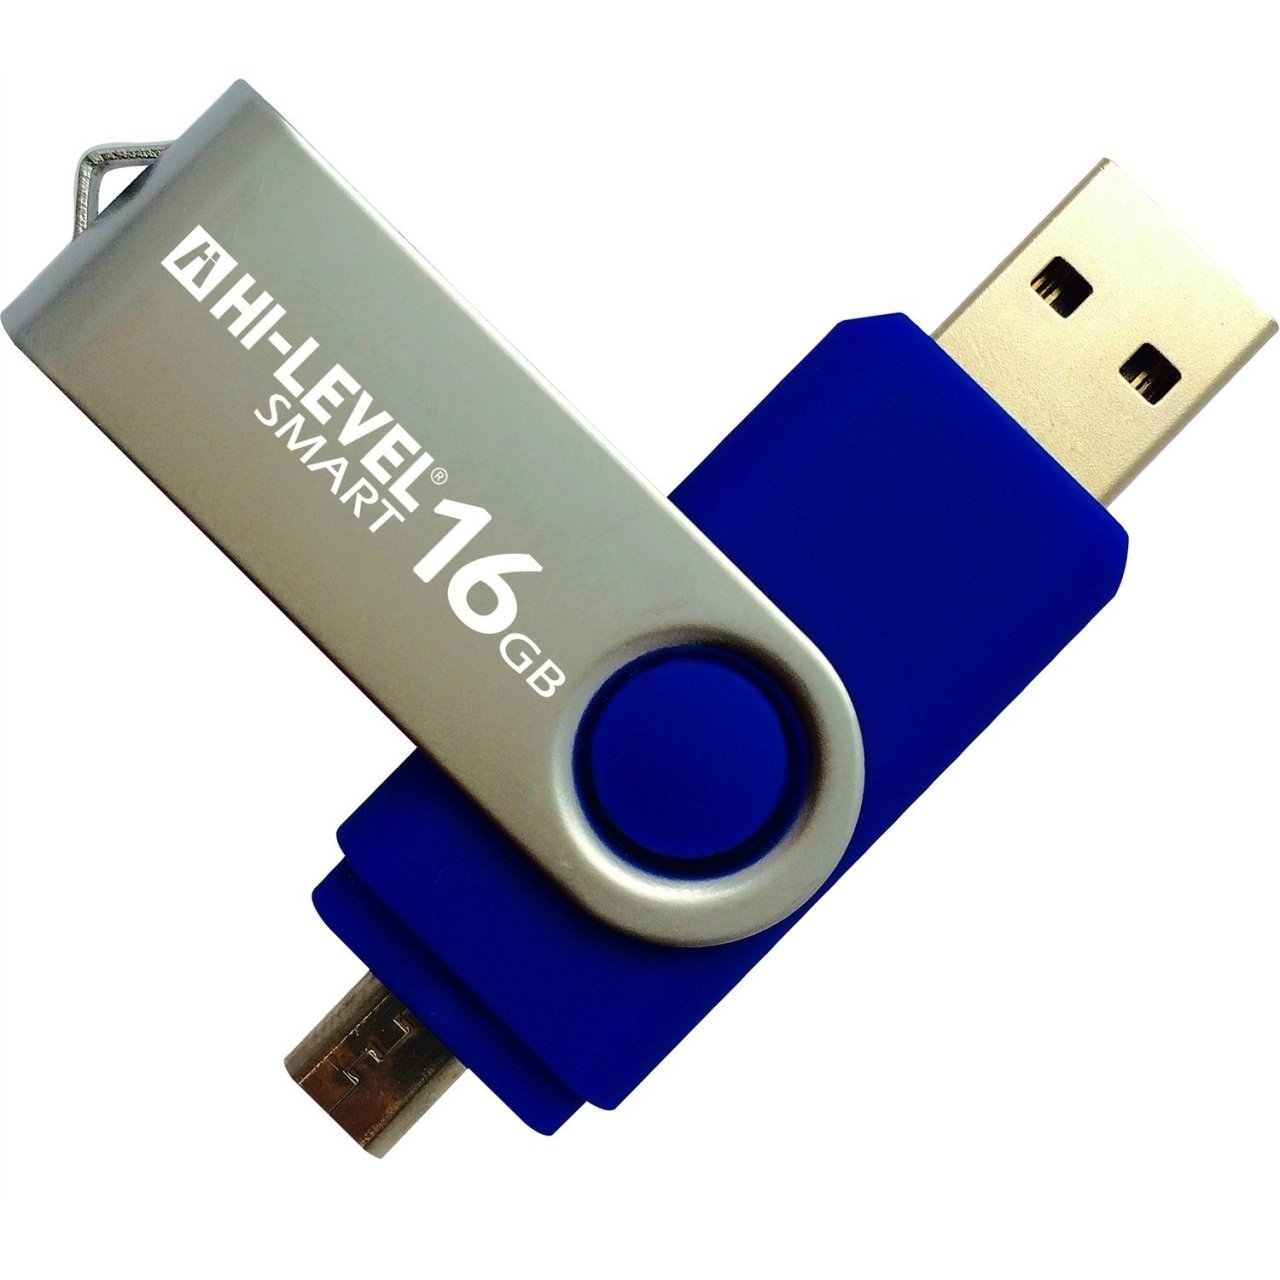 Hi-Level OTG Smart 16 GB Usb Bellek (HLV-USB20/16 GB) - Mavi